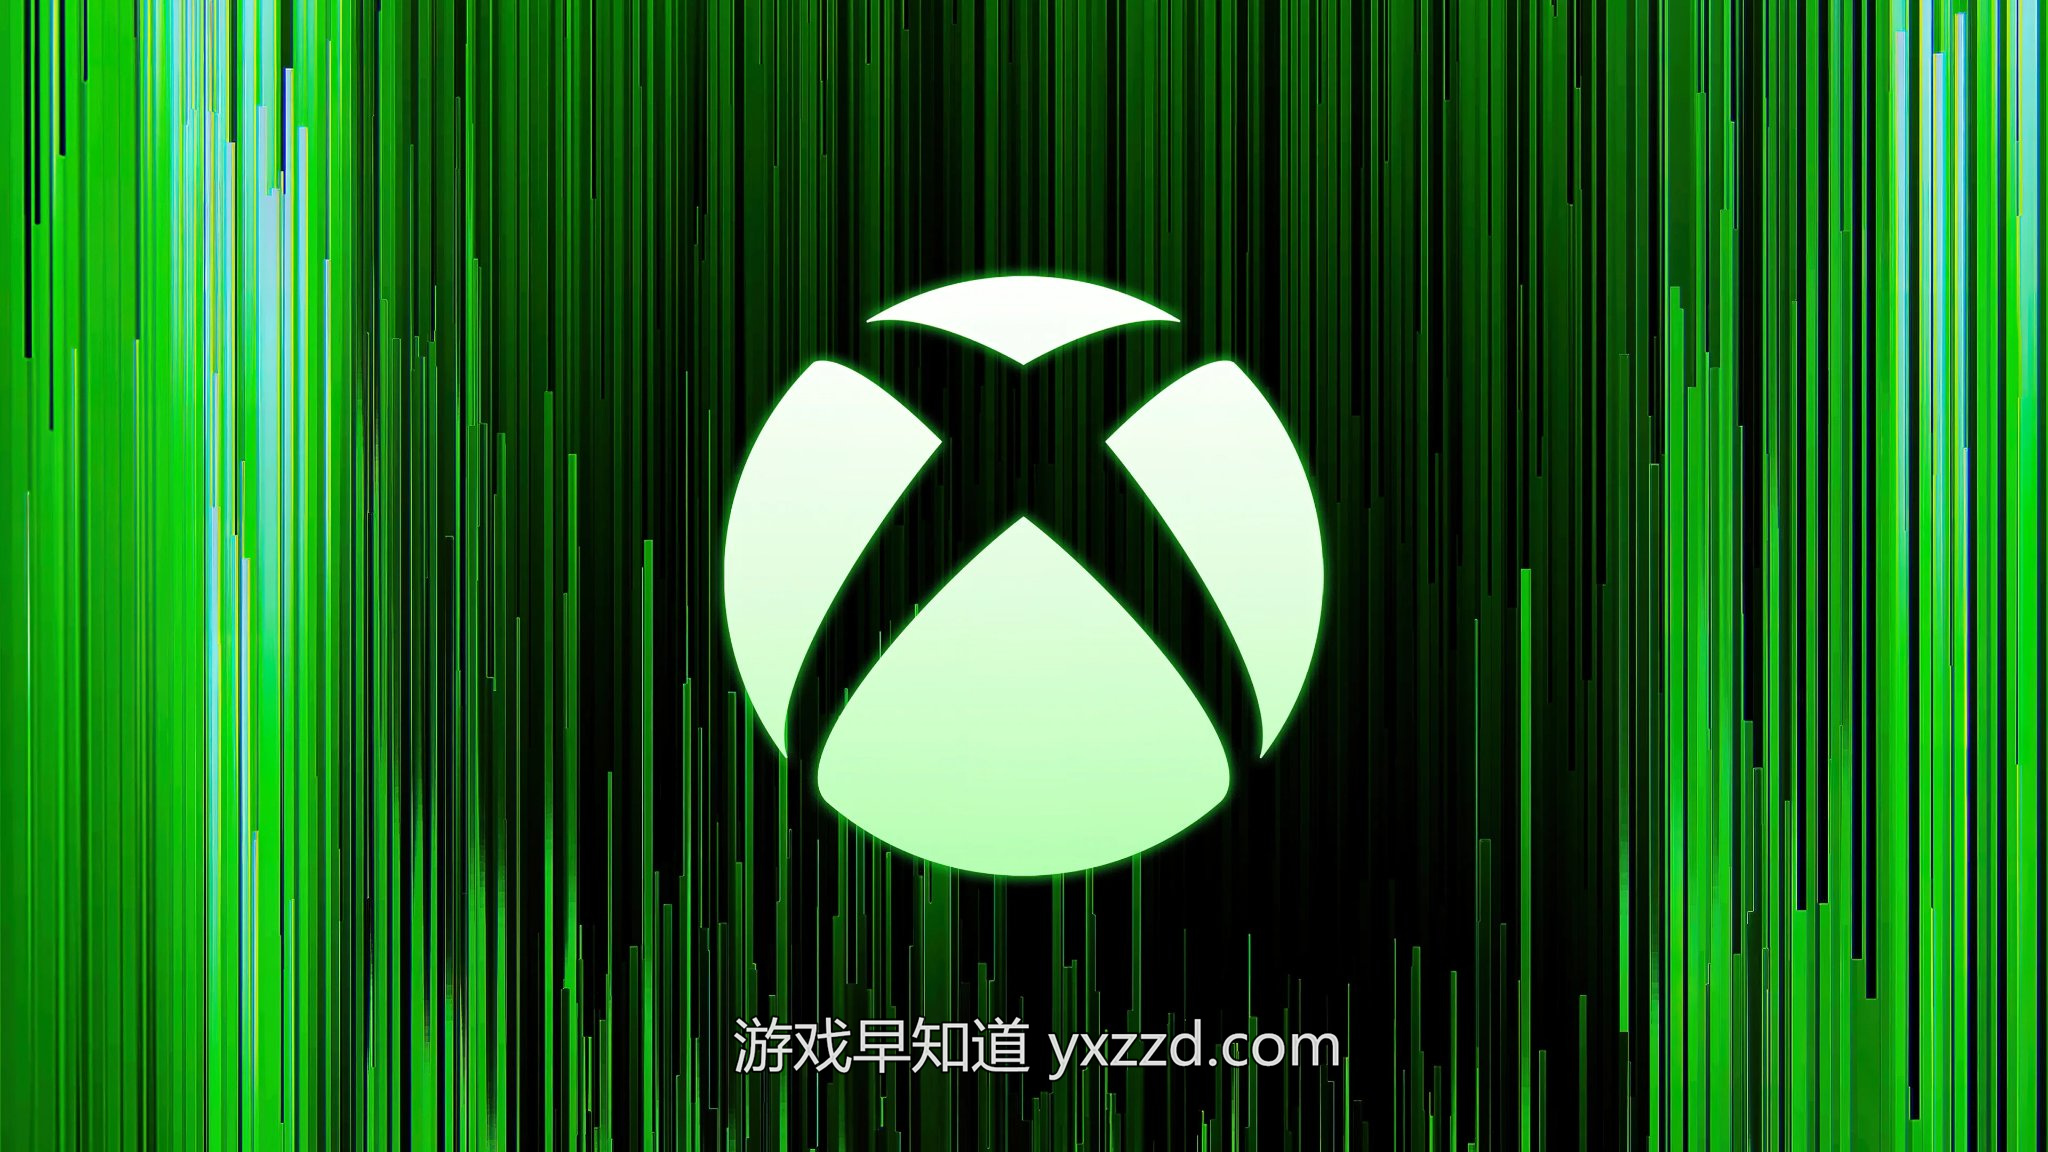 微软游戏负责人Phil Spencer举行内部说明会 确认不会放弃Xbox主机硬件业务